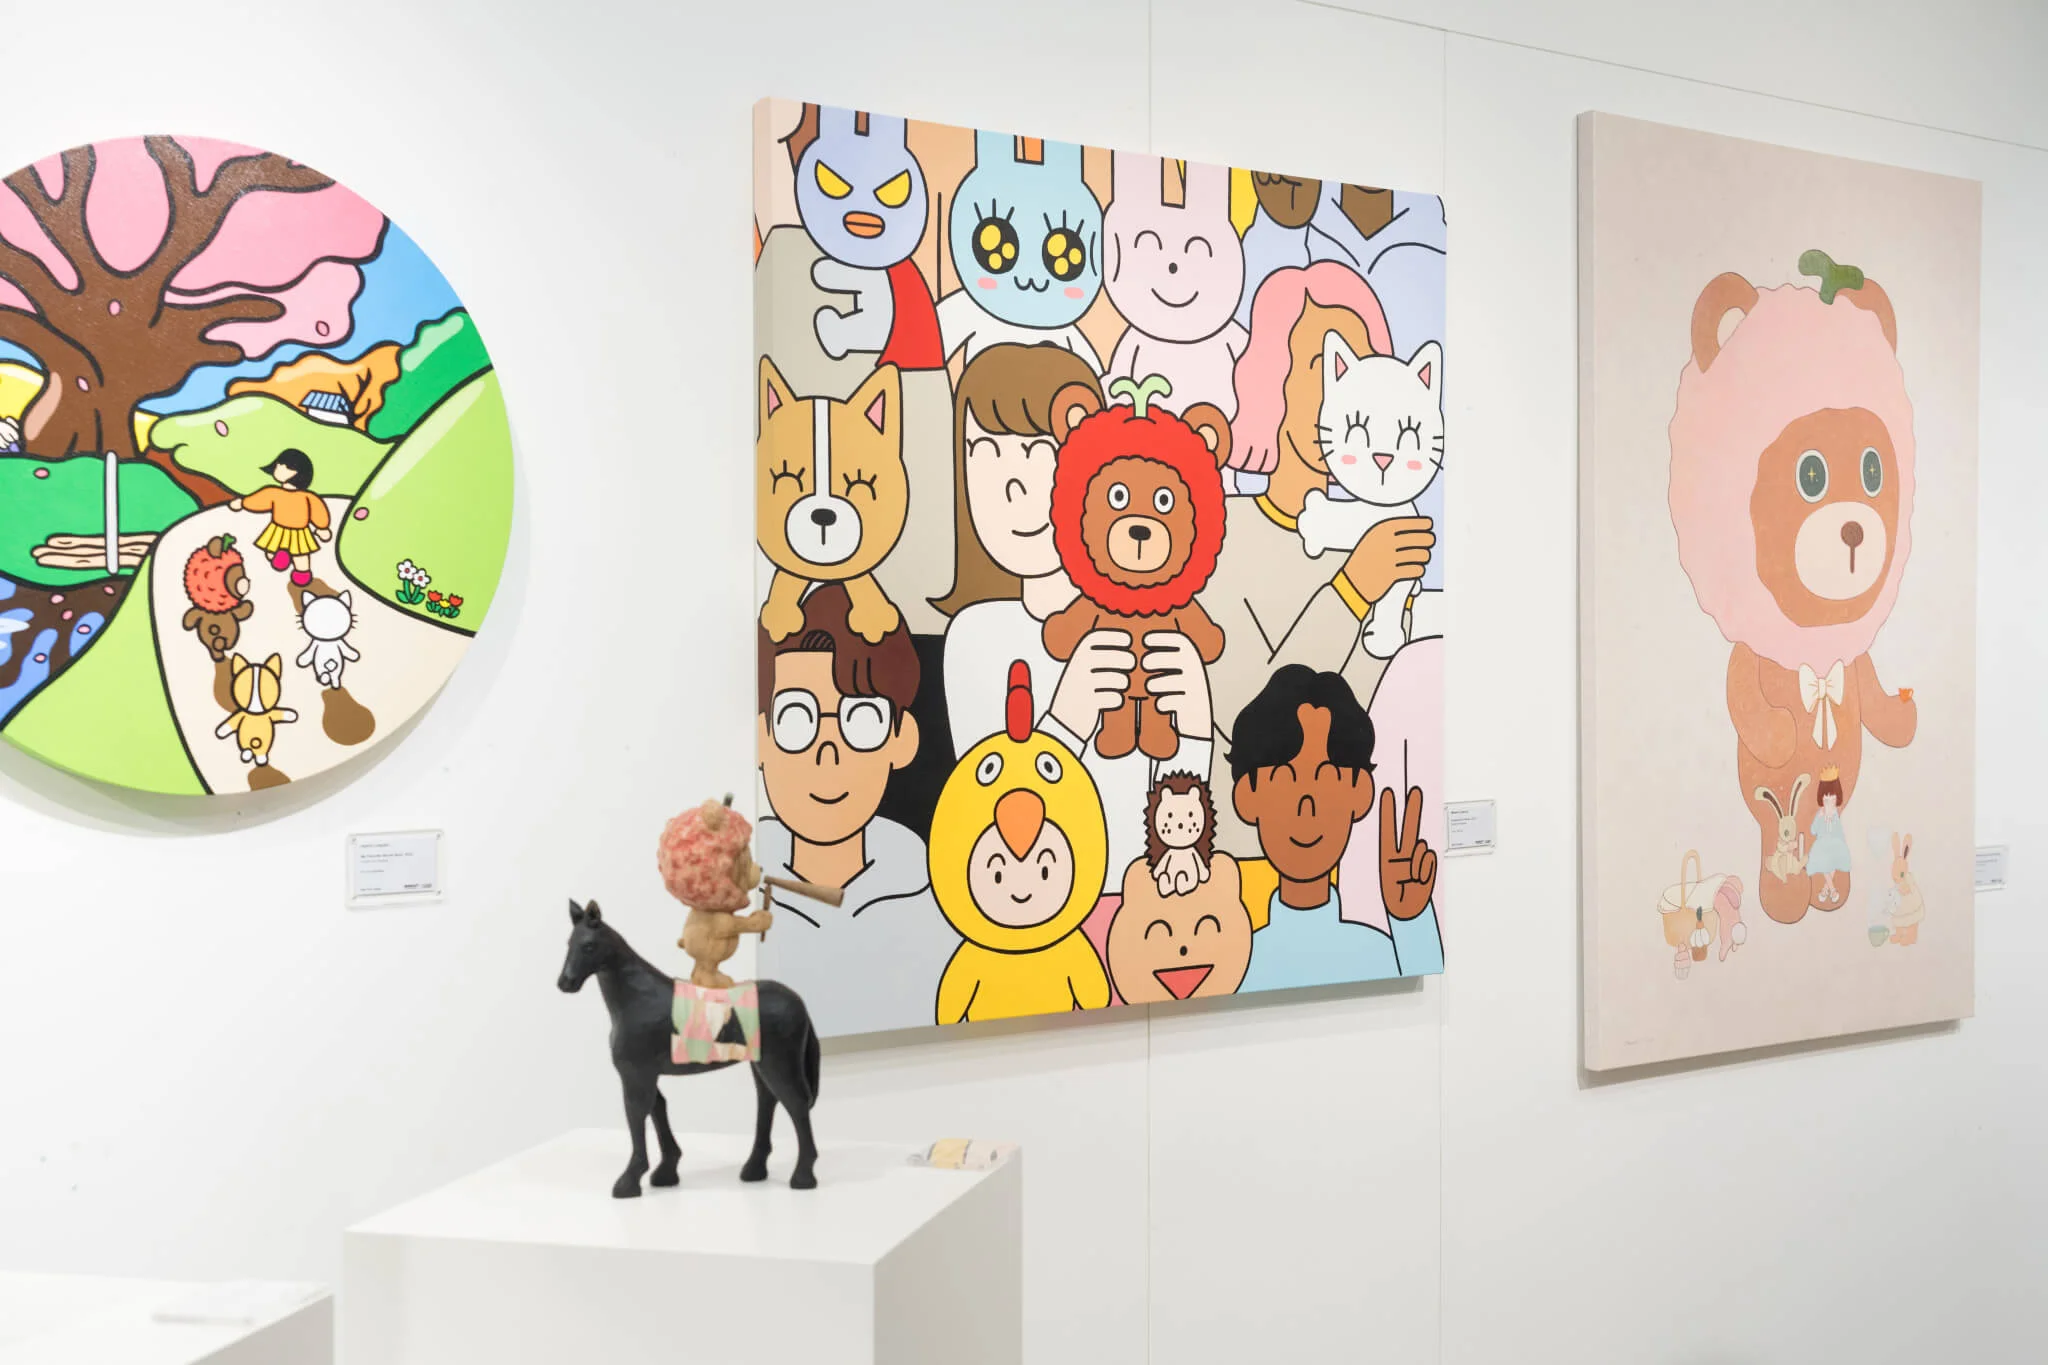 展覽展出多位海外藝術家作品，包括來自日本的畫家 Ayaı̈ro（左一）、木雕藝術家Yuta Nishiura（左二）及Wakaru（右二），及韓國藝術家文升妍（右一）。